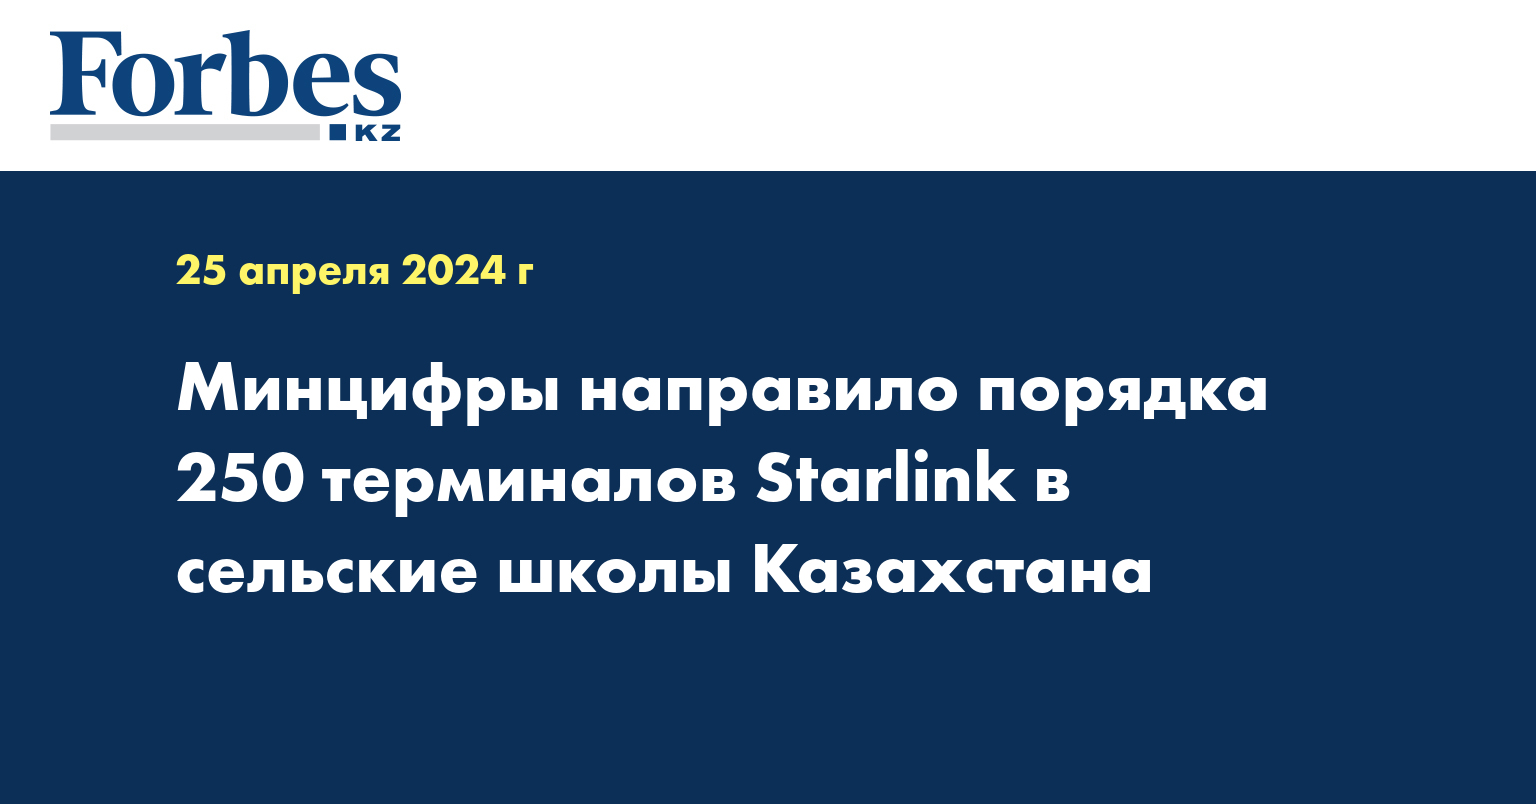 Минцифры направило порядка 250 терминалов Starlink в сельские школы Казахстана